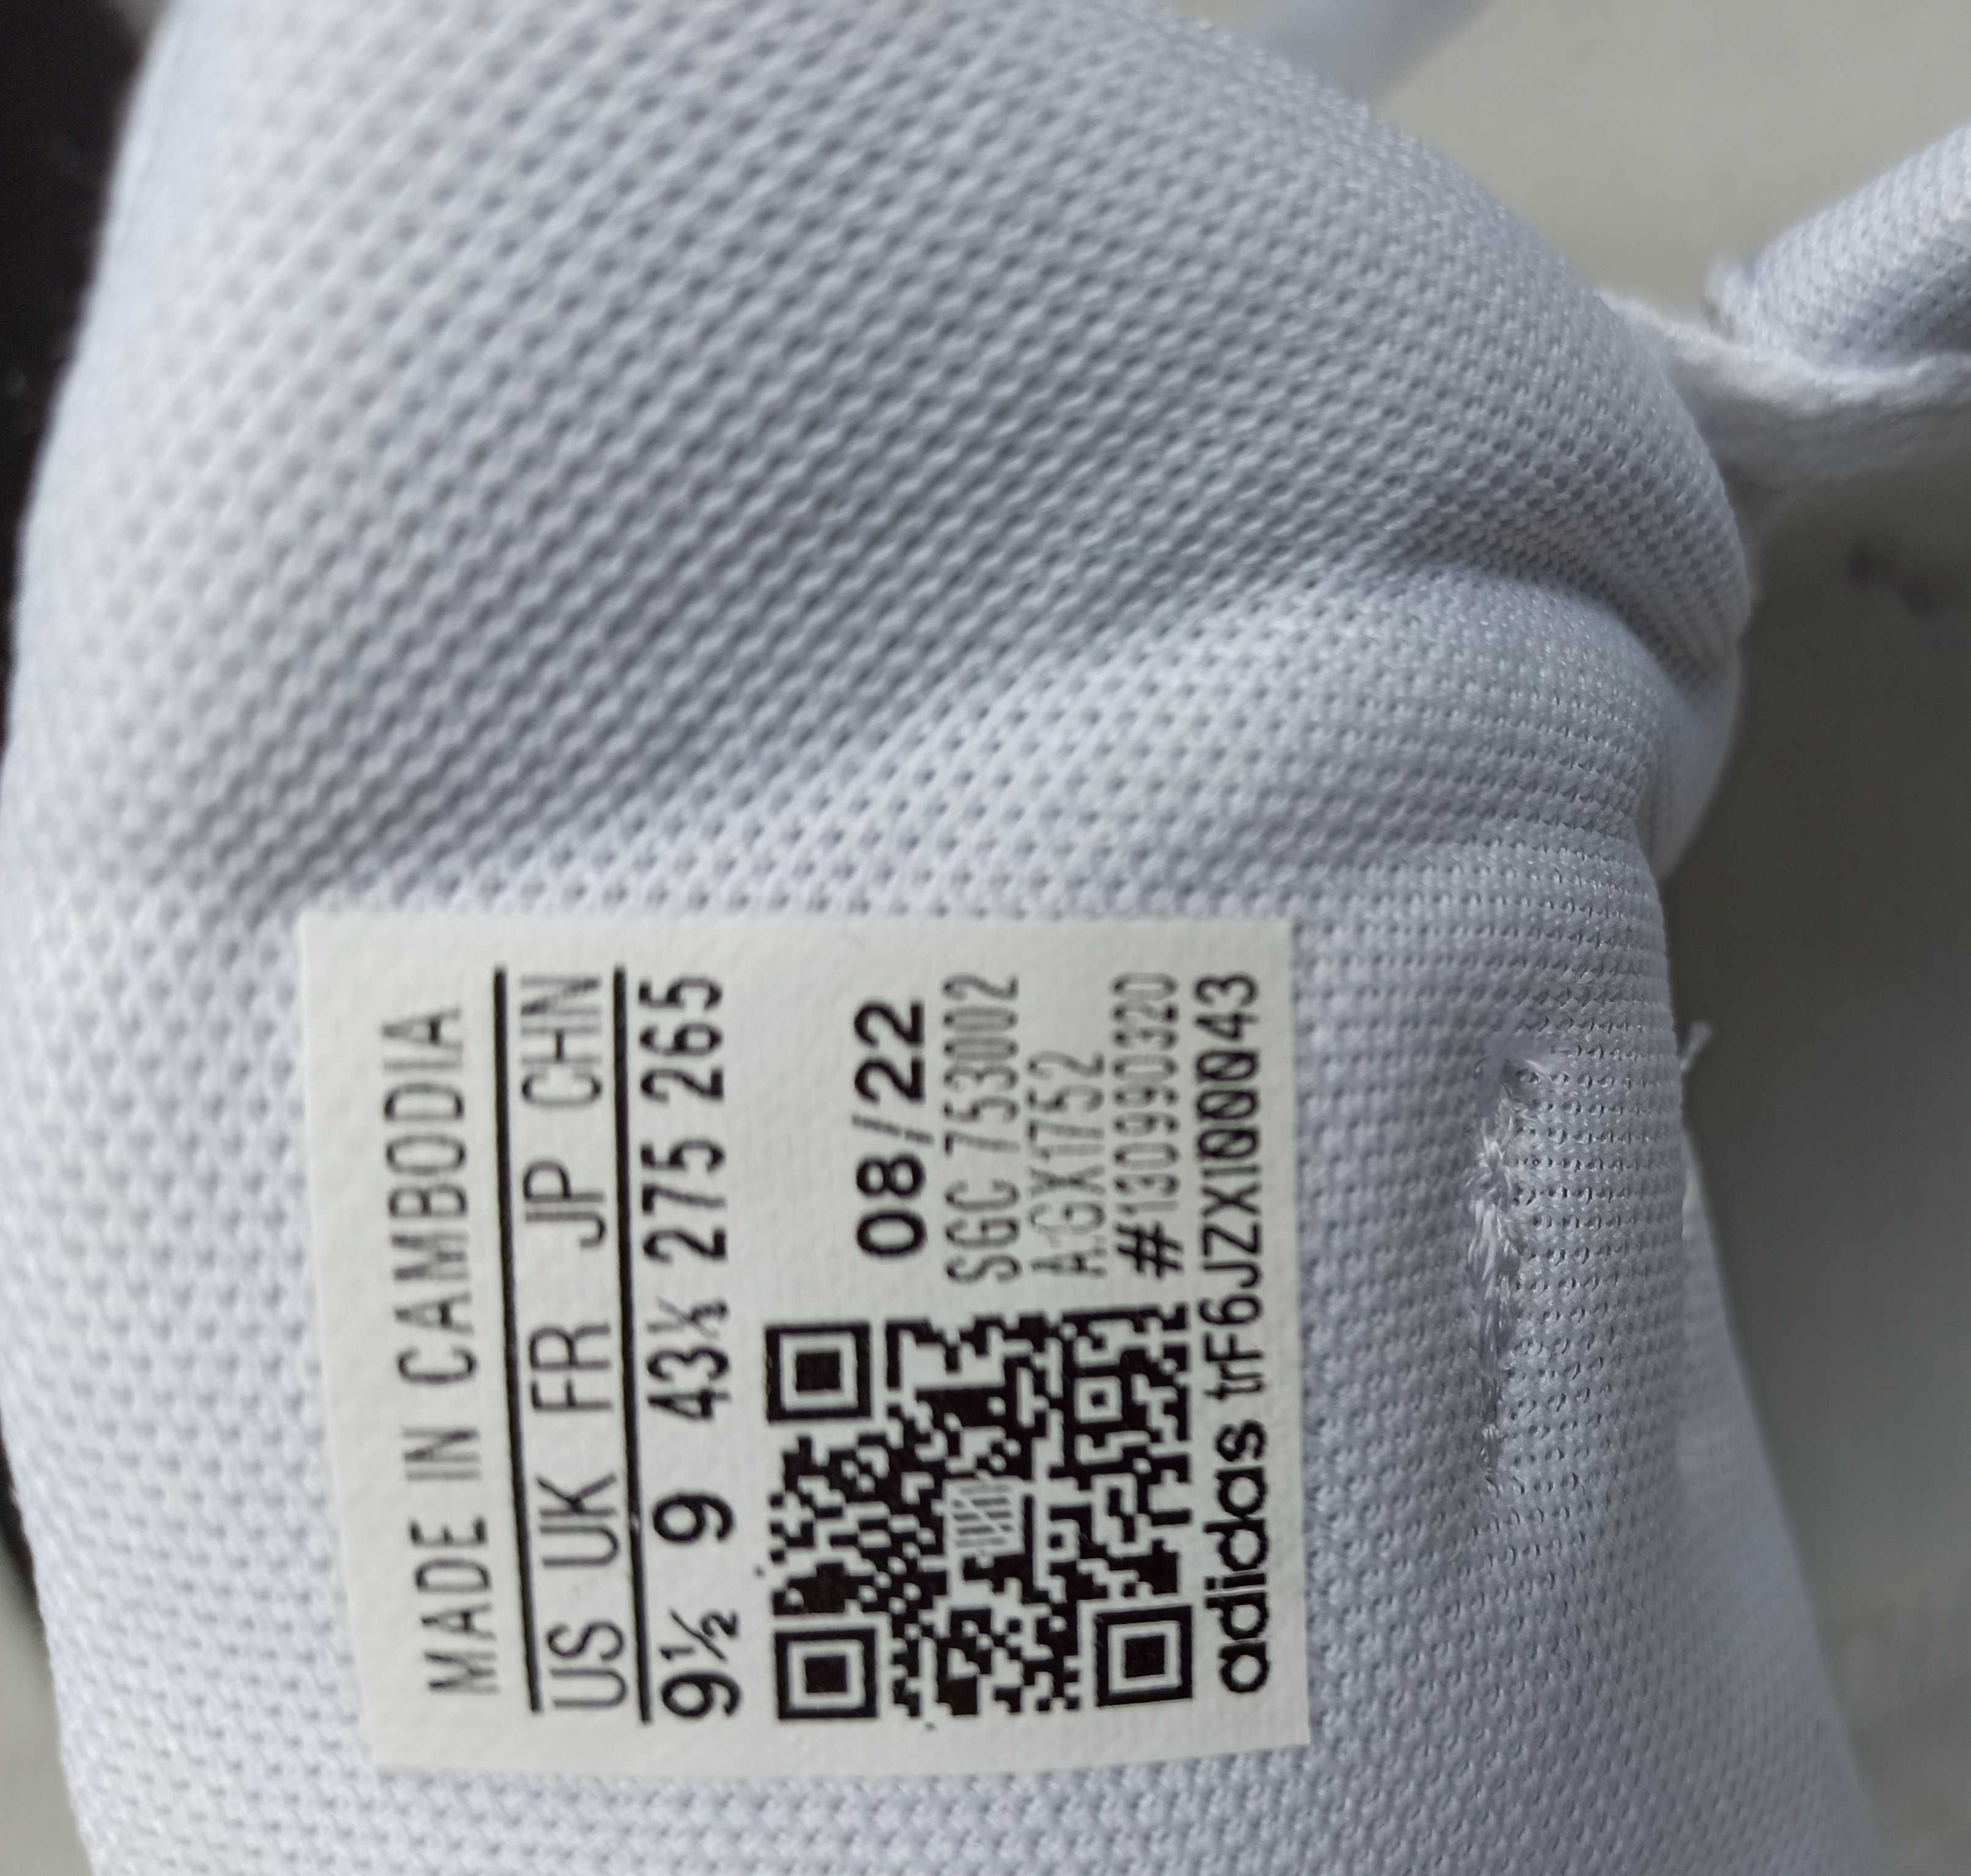 кроссовки новые Adidas 43 размера, стелька 28см оригинал